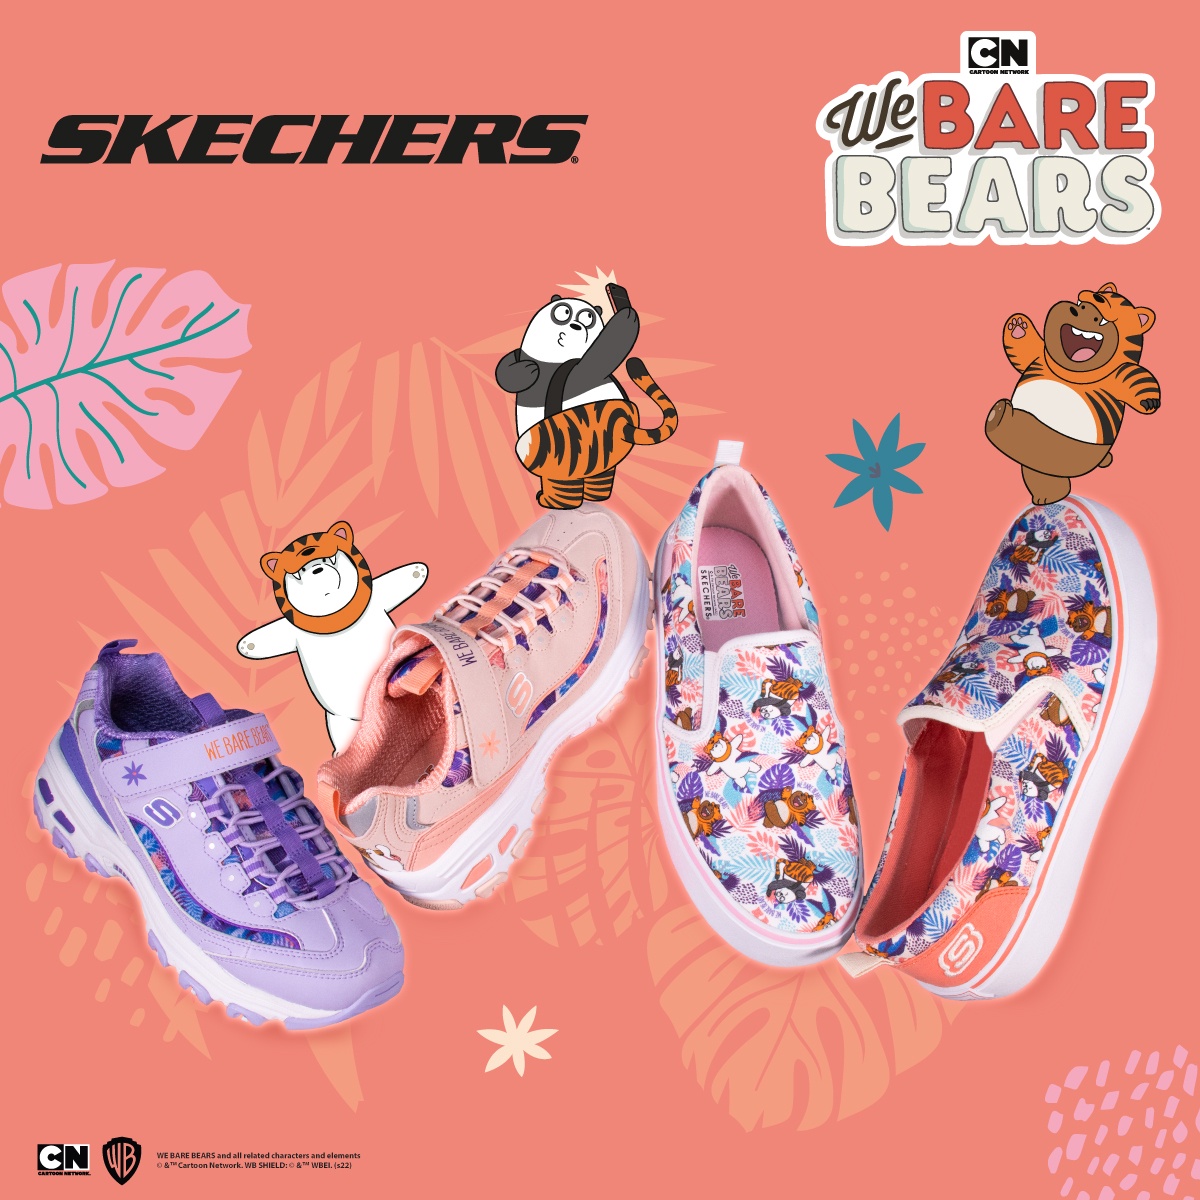 สเก็ตเชอร์ส ส่งสามหมีจอมป่วม We Bare Bears มาคำรามส่งความสุขต้อนรับปีเสือ ในคอลเลคชั่น SKECHERS X We Bare Bears